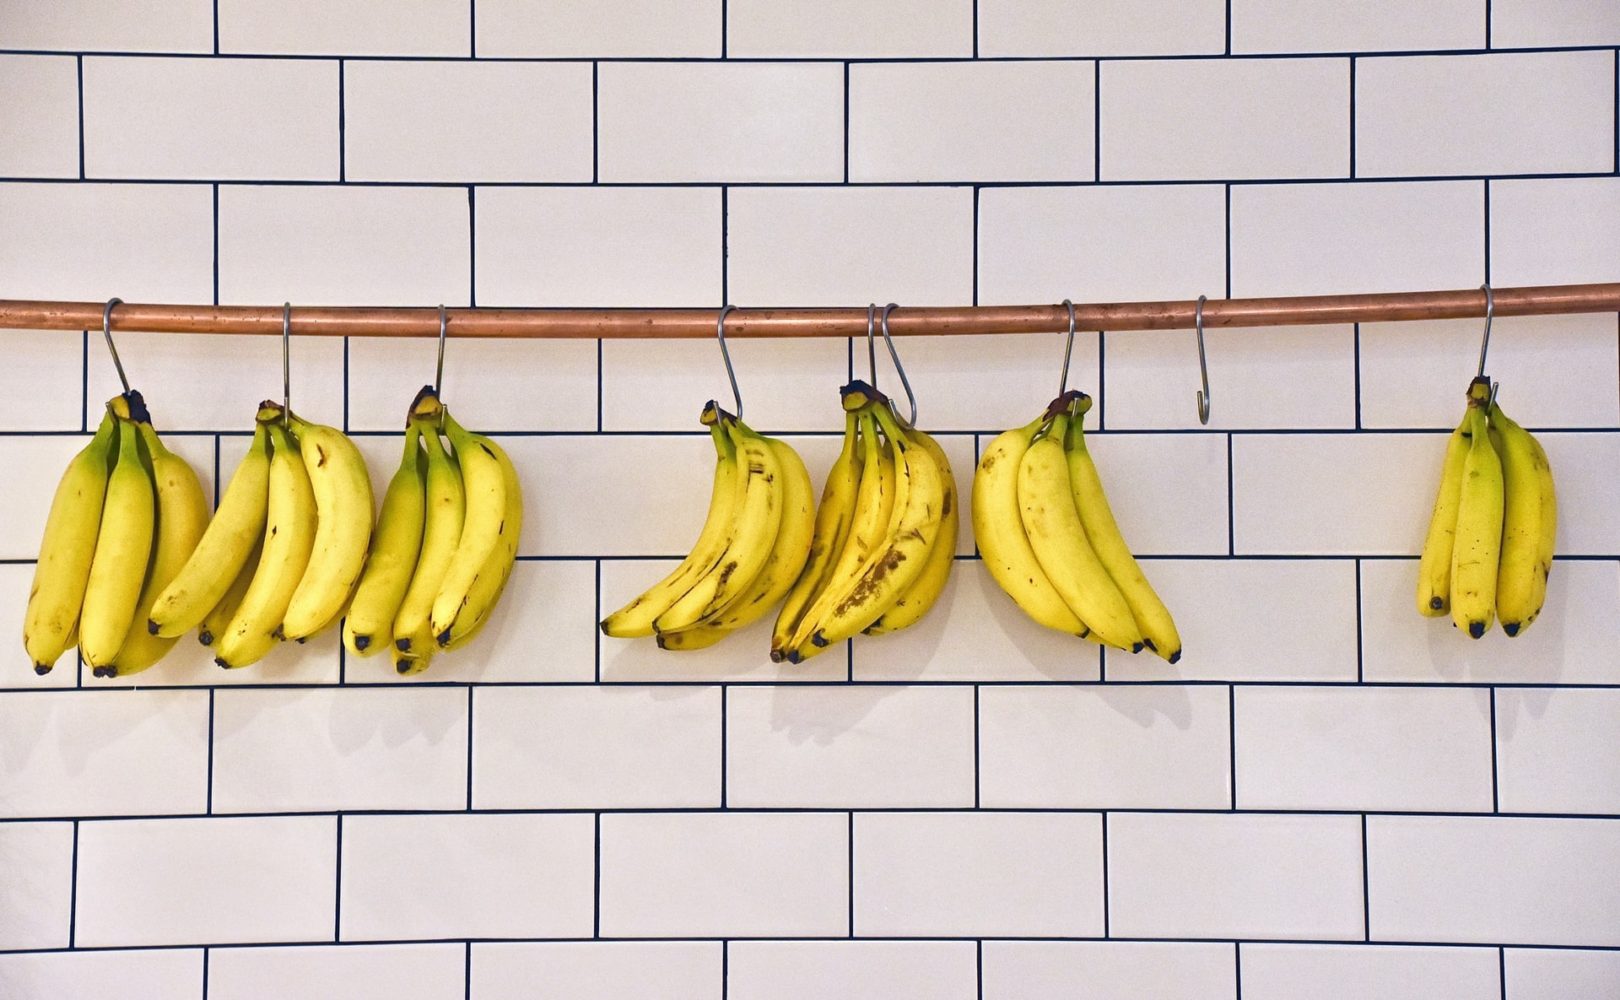 Banana: descubra as curiosidades por trás dessa fruta tão famosa. Foto/Reprodução: Yoko Correia Nishimiya no Unsplash